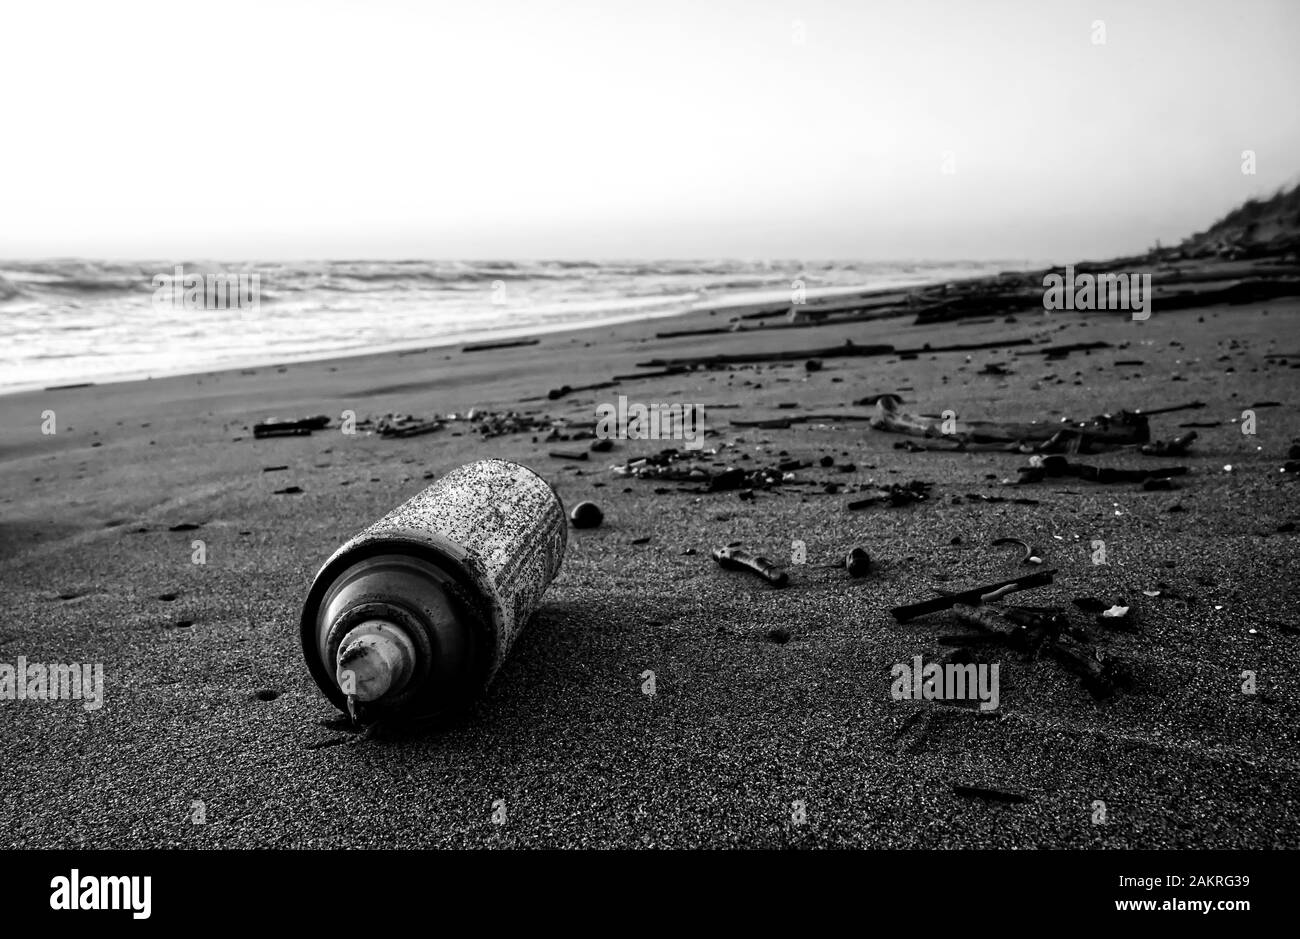 Eine verrostete Sprühflasche an einem Strand zeigt die Auswirkungen auf die Natur der menschlichen Verschmutzung Stockfoto